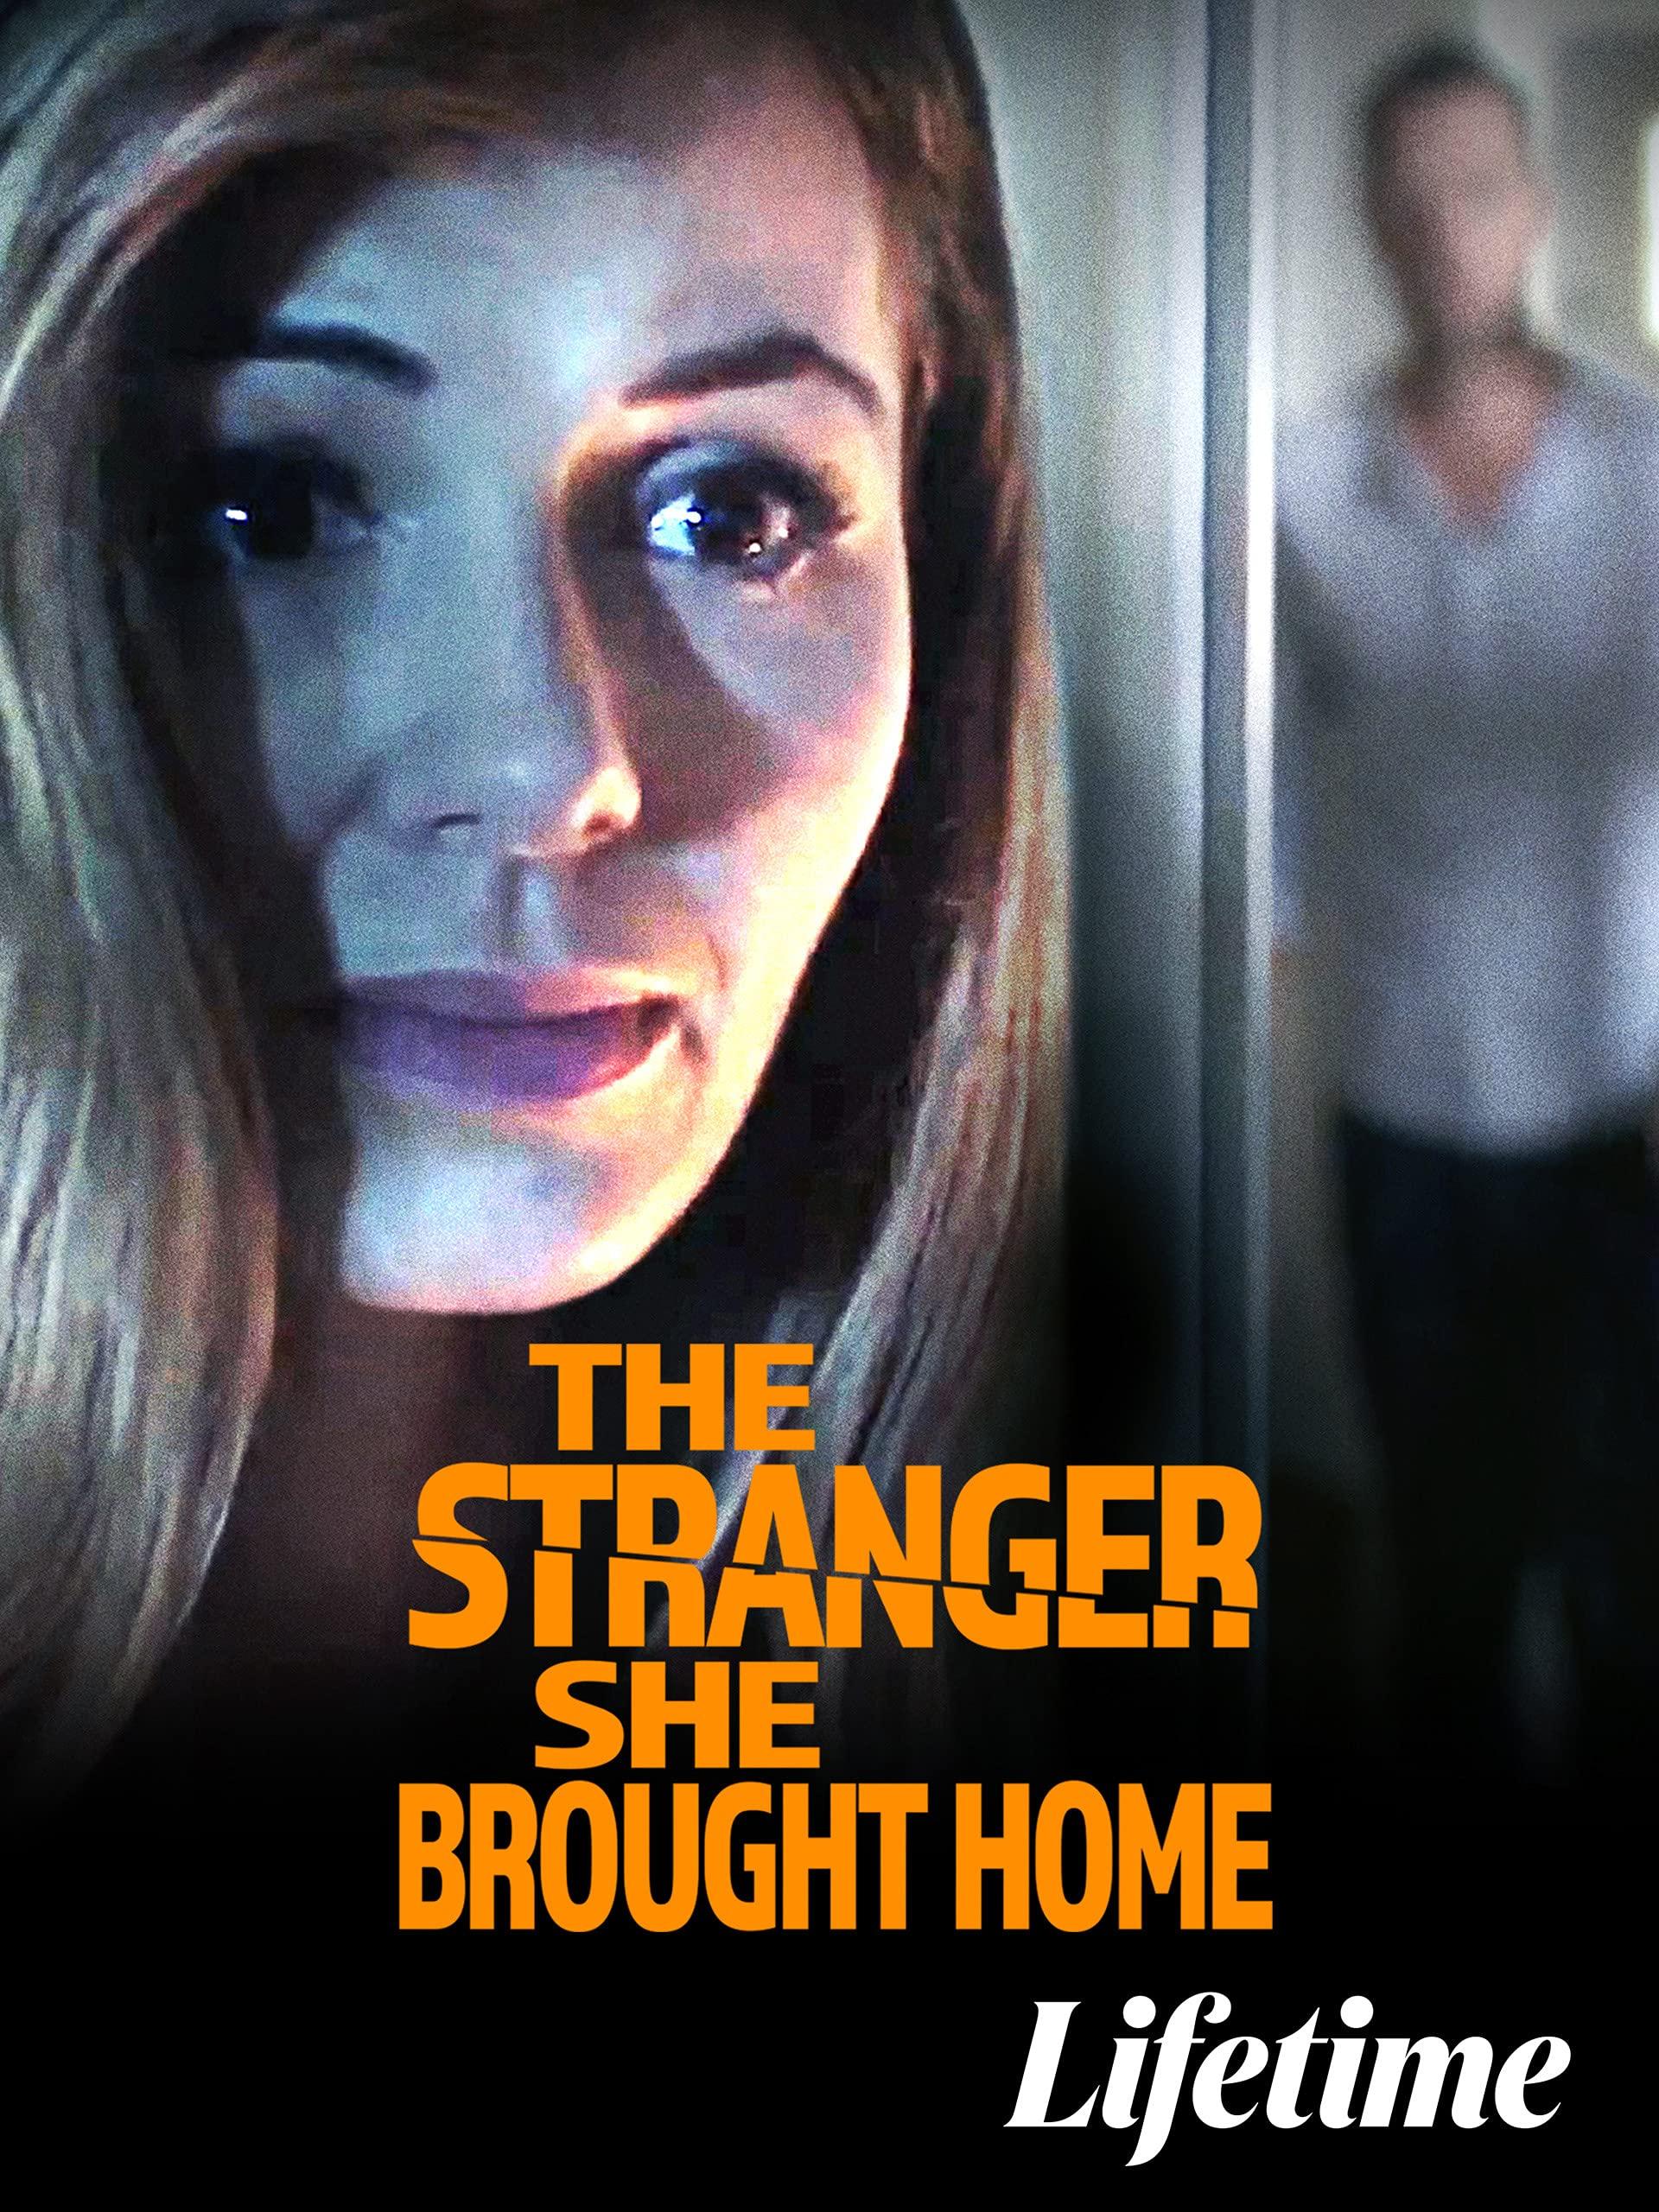 بوستر The Stranger She Home